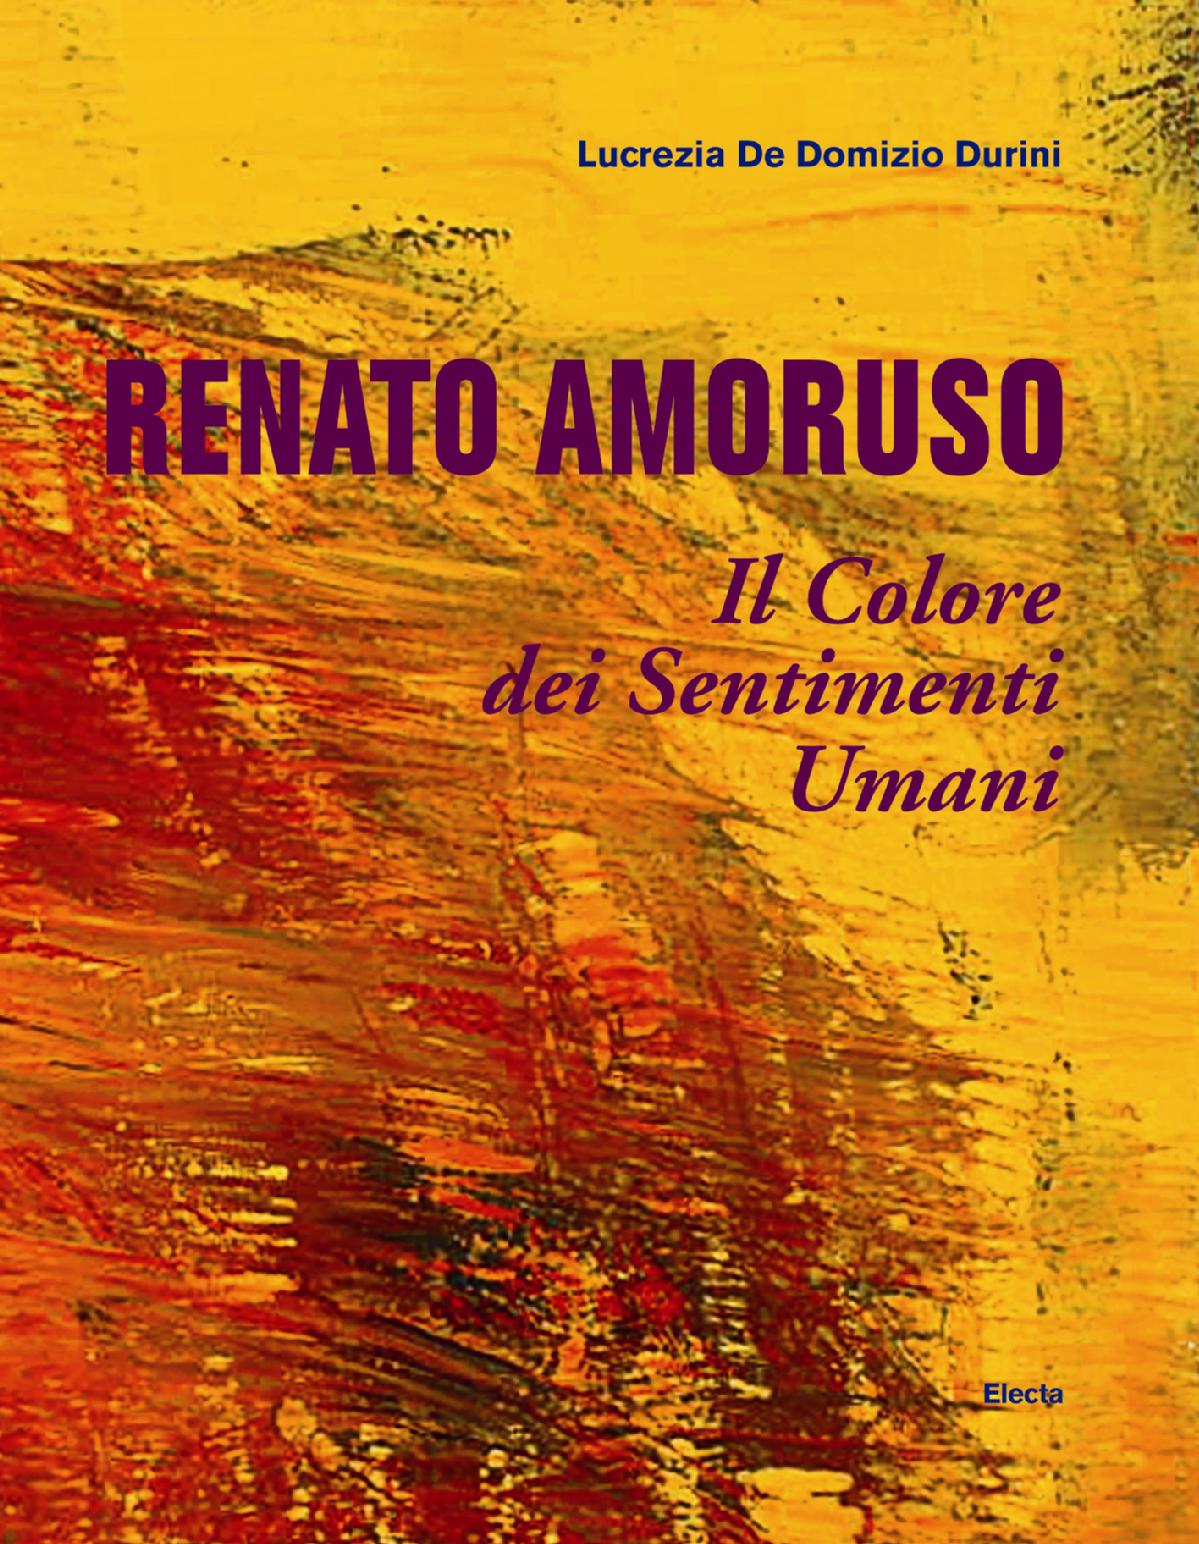 Renato Amoruso. Il Colore dei Sentimenti umani